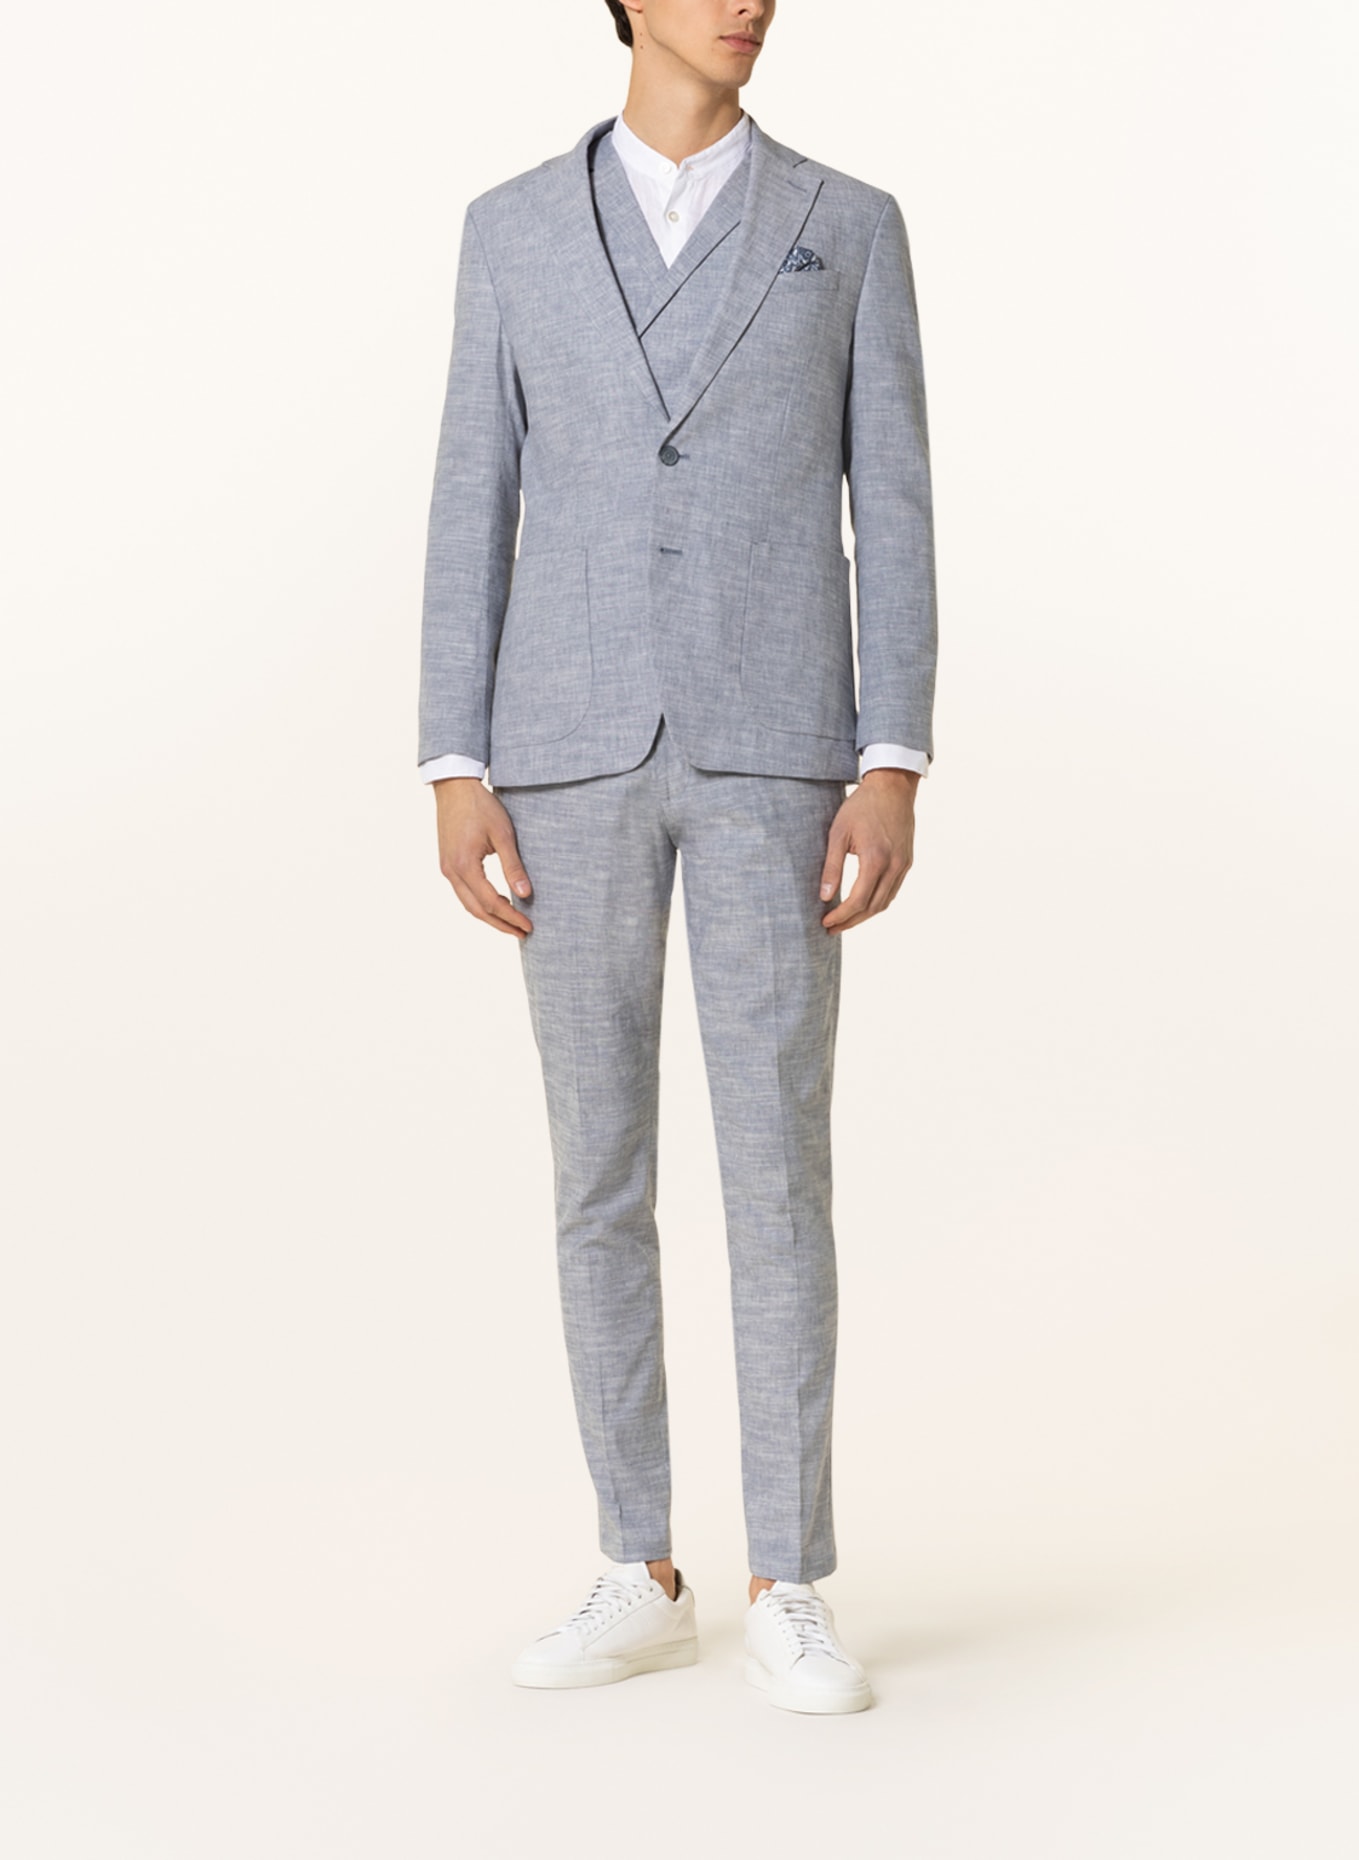 PAUL Suit jacket slim fit with linen, Color: 001 Light Blue (Image 2)